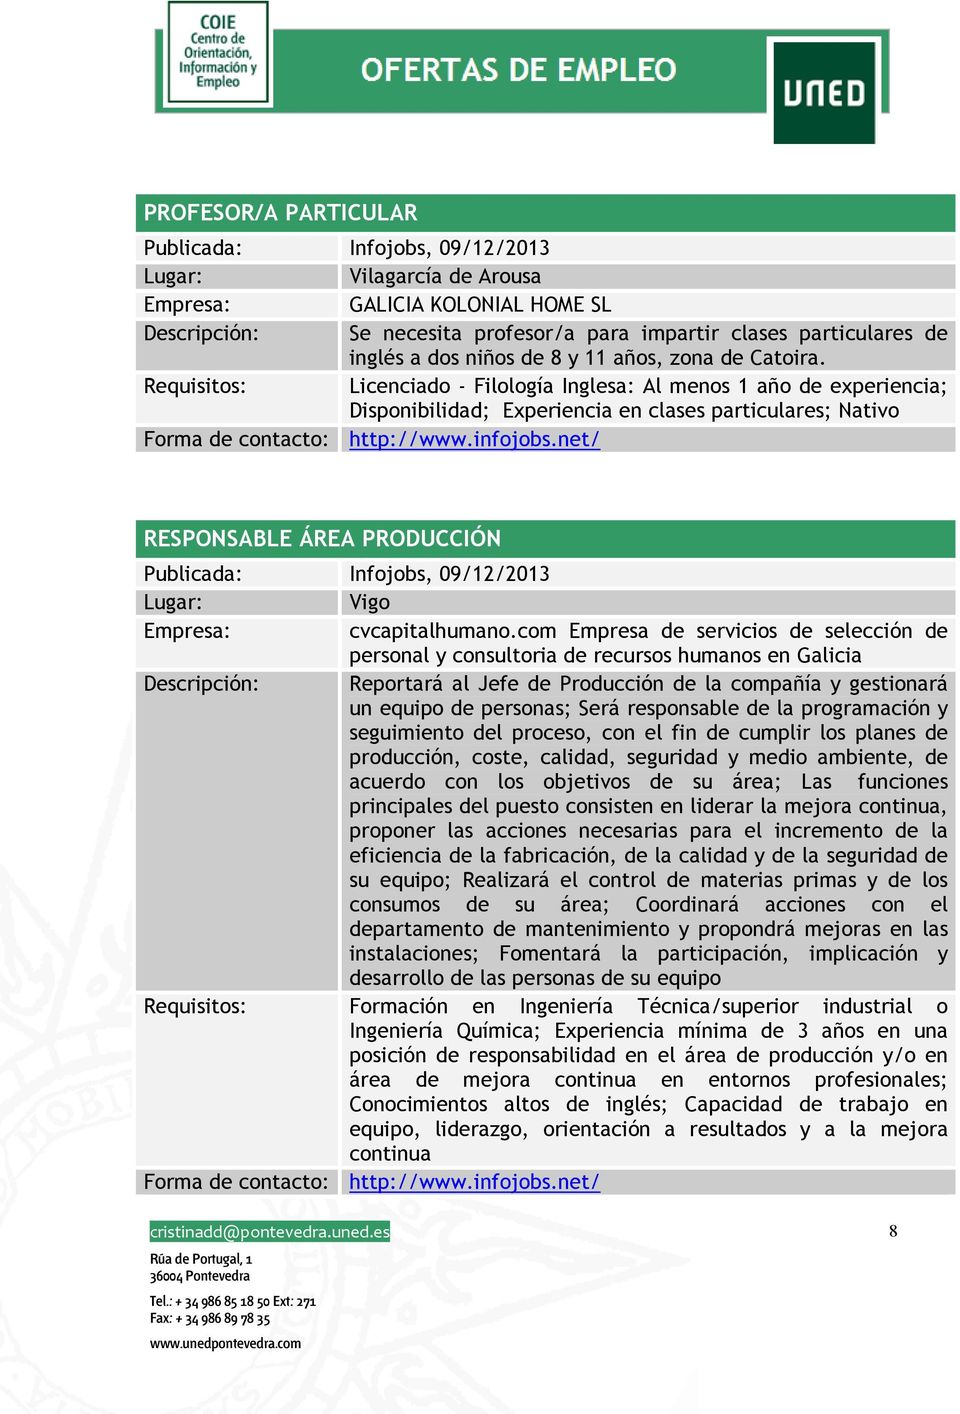 Requisitos: Licenciado - Filología Inglesa: Al menos 1 año de experiencia; Disponibilidad; Experiencia en clases particulares; Nativo RESPONSABLE ÁREA PRODUCCIÓN Publicada: Infojobs, 09/12/2013 Vigo